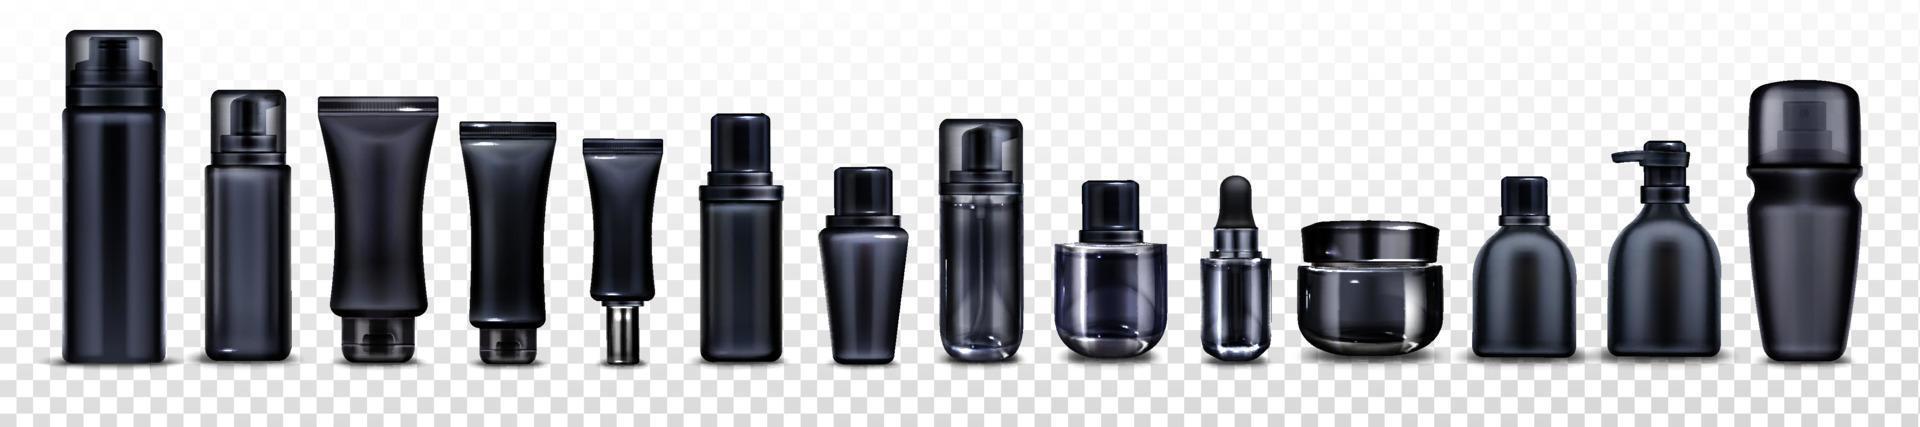 maquete vetorial de frascos e tubos de cosméticos pretos vetor